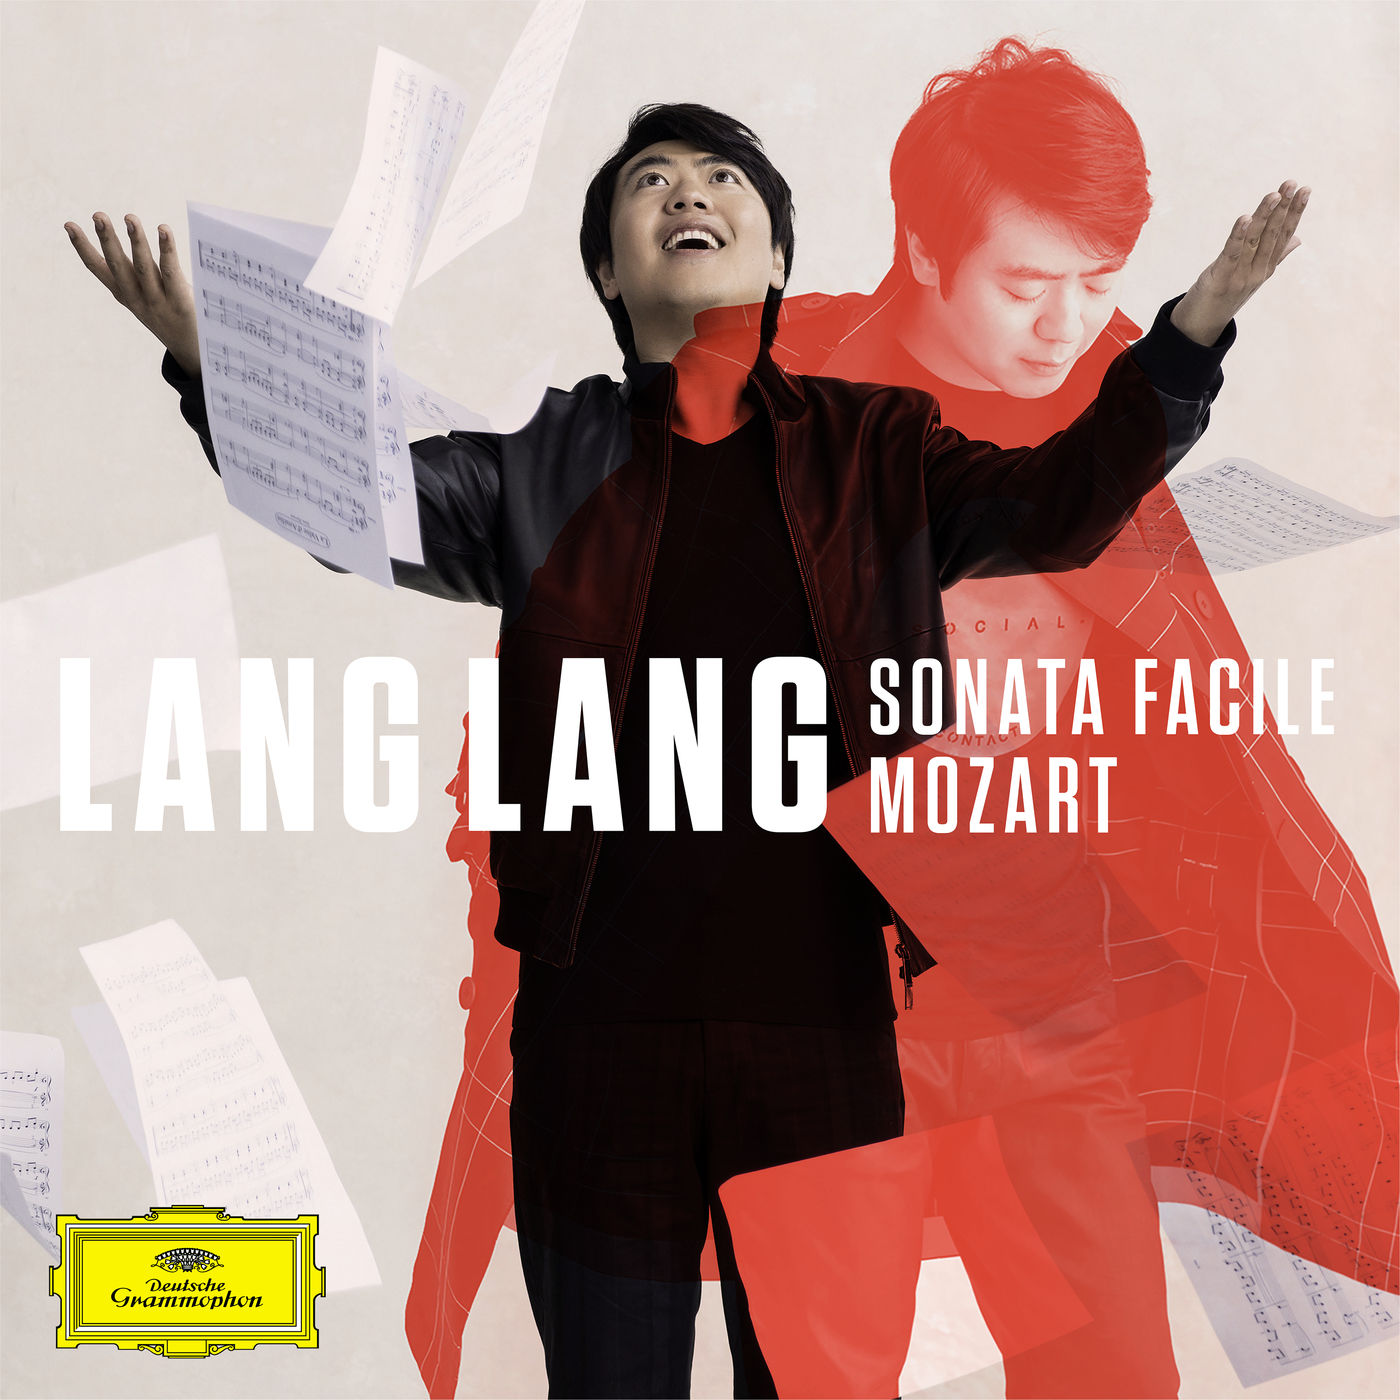 Lang Lang - Mozart Piano Sonata No. 16 in C Major, K. 545 Sonata facile (2020) [FLAC 24bit/96kHz]